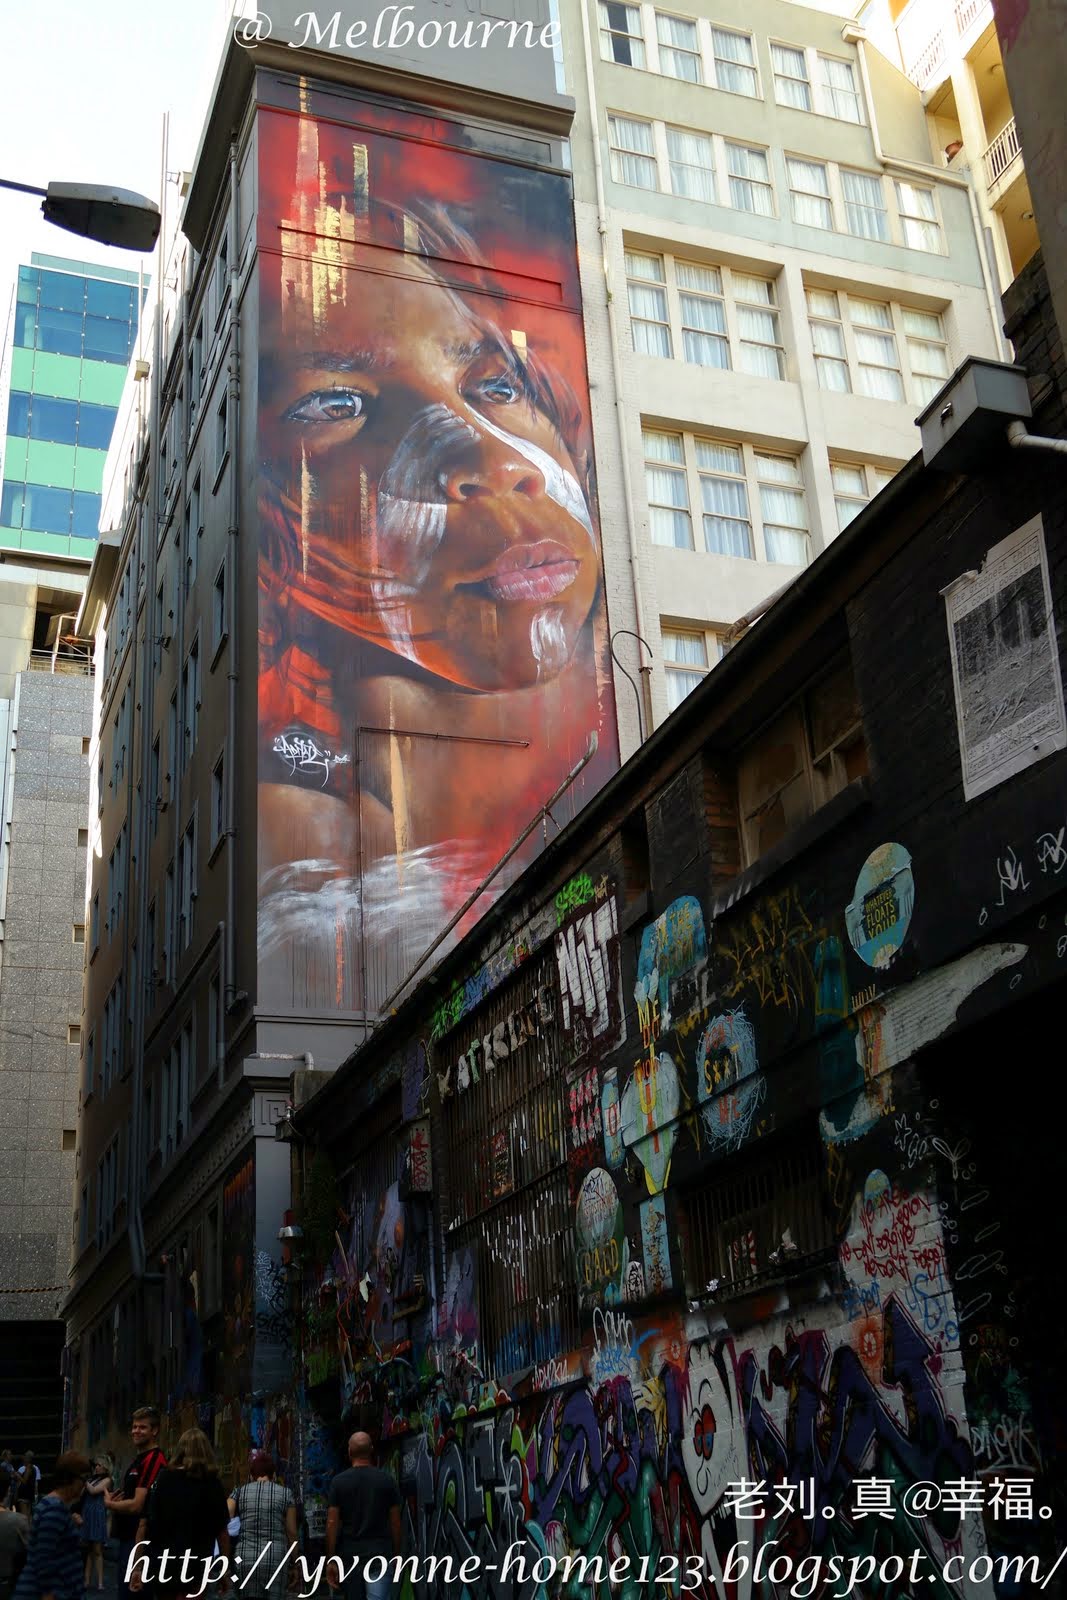 老刘。真@幸福。: Grafitti @ Melbourne 墨尔本街头涂鸦